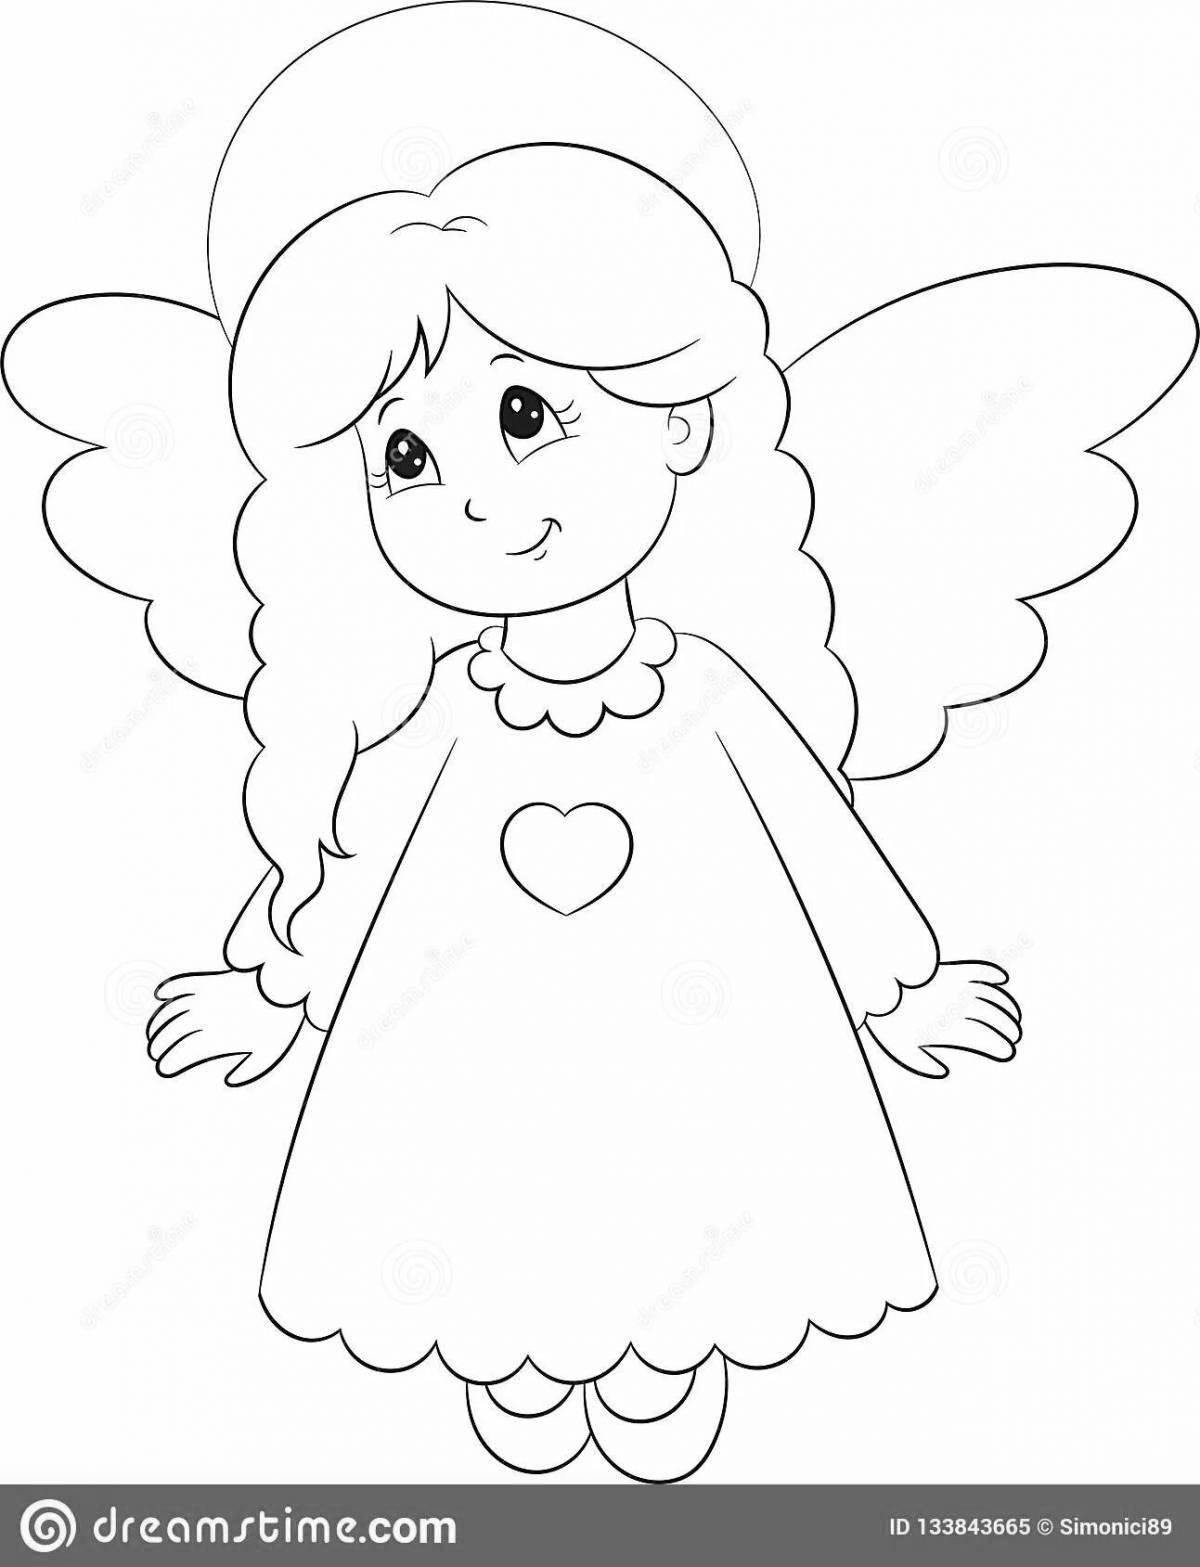 Восхитительная раскраска ангел для детей 3-4 лет